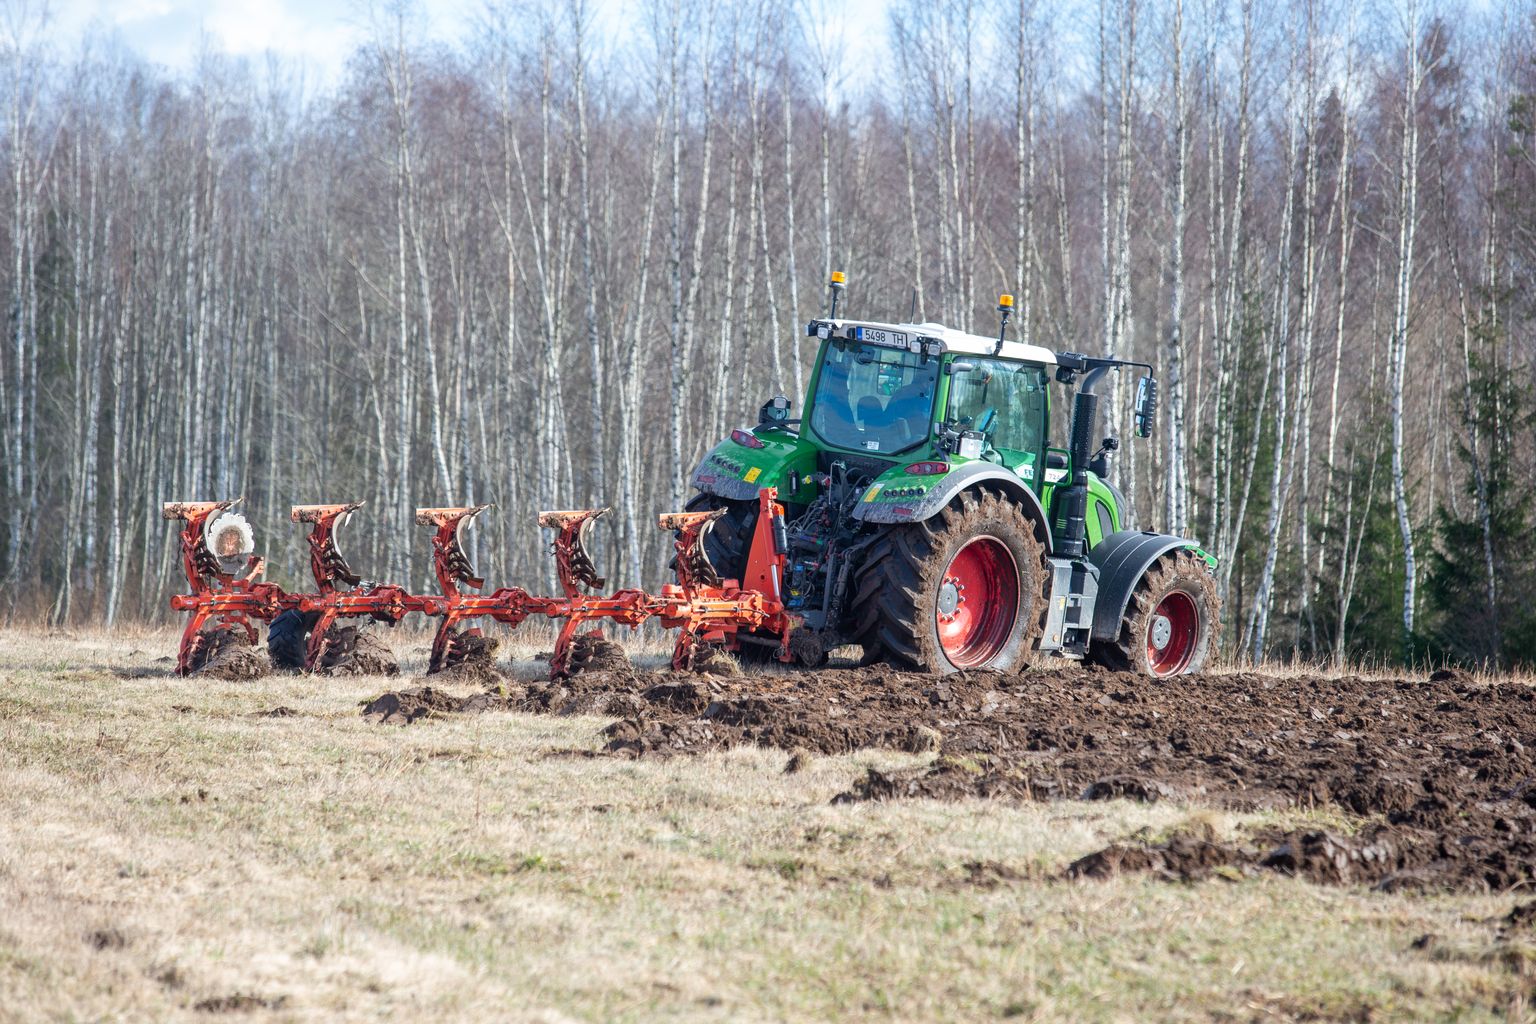 Digioskusi vajatakse üha enam ka põllumajanduses, näiteks uute kõrgtehnoloogiliste traktorite juhtimiseks.